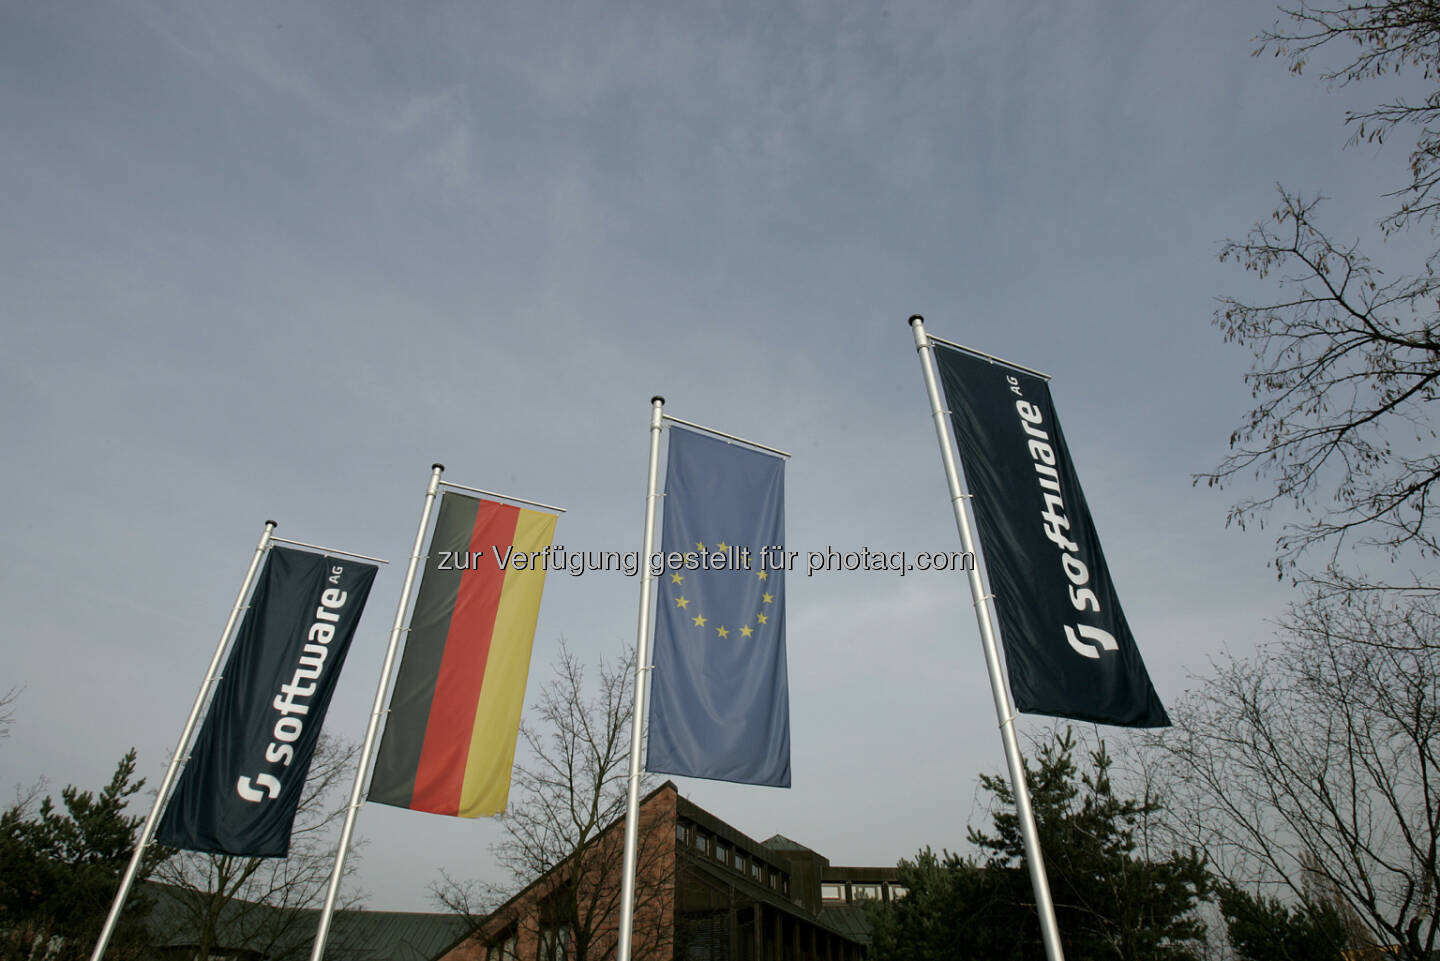 Software AG, Flaggen, EU, Deutschland, Quelle: http://www.softwareag.com/de/press/downloads/logos/default.asp